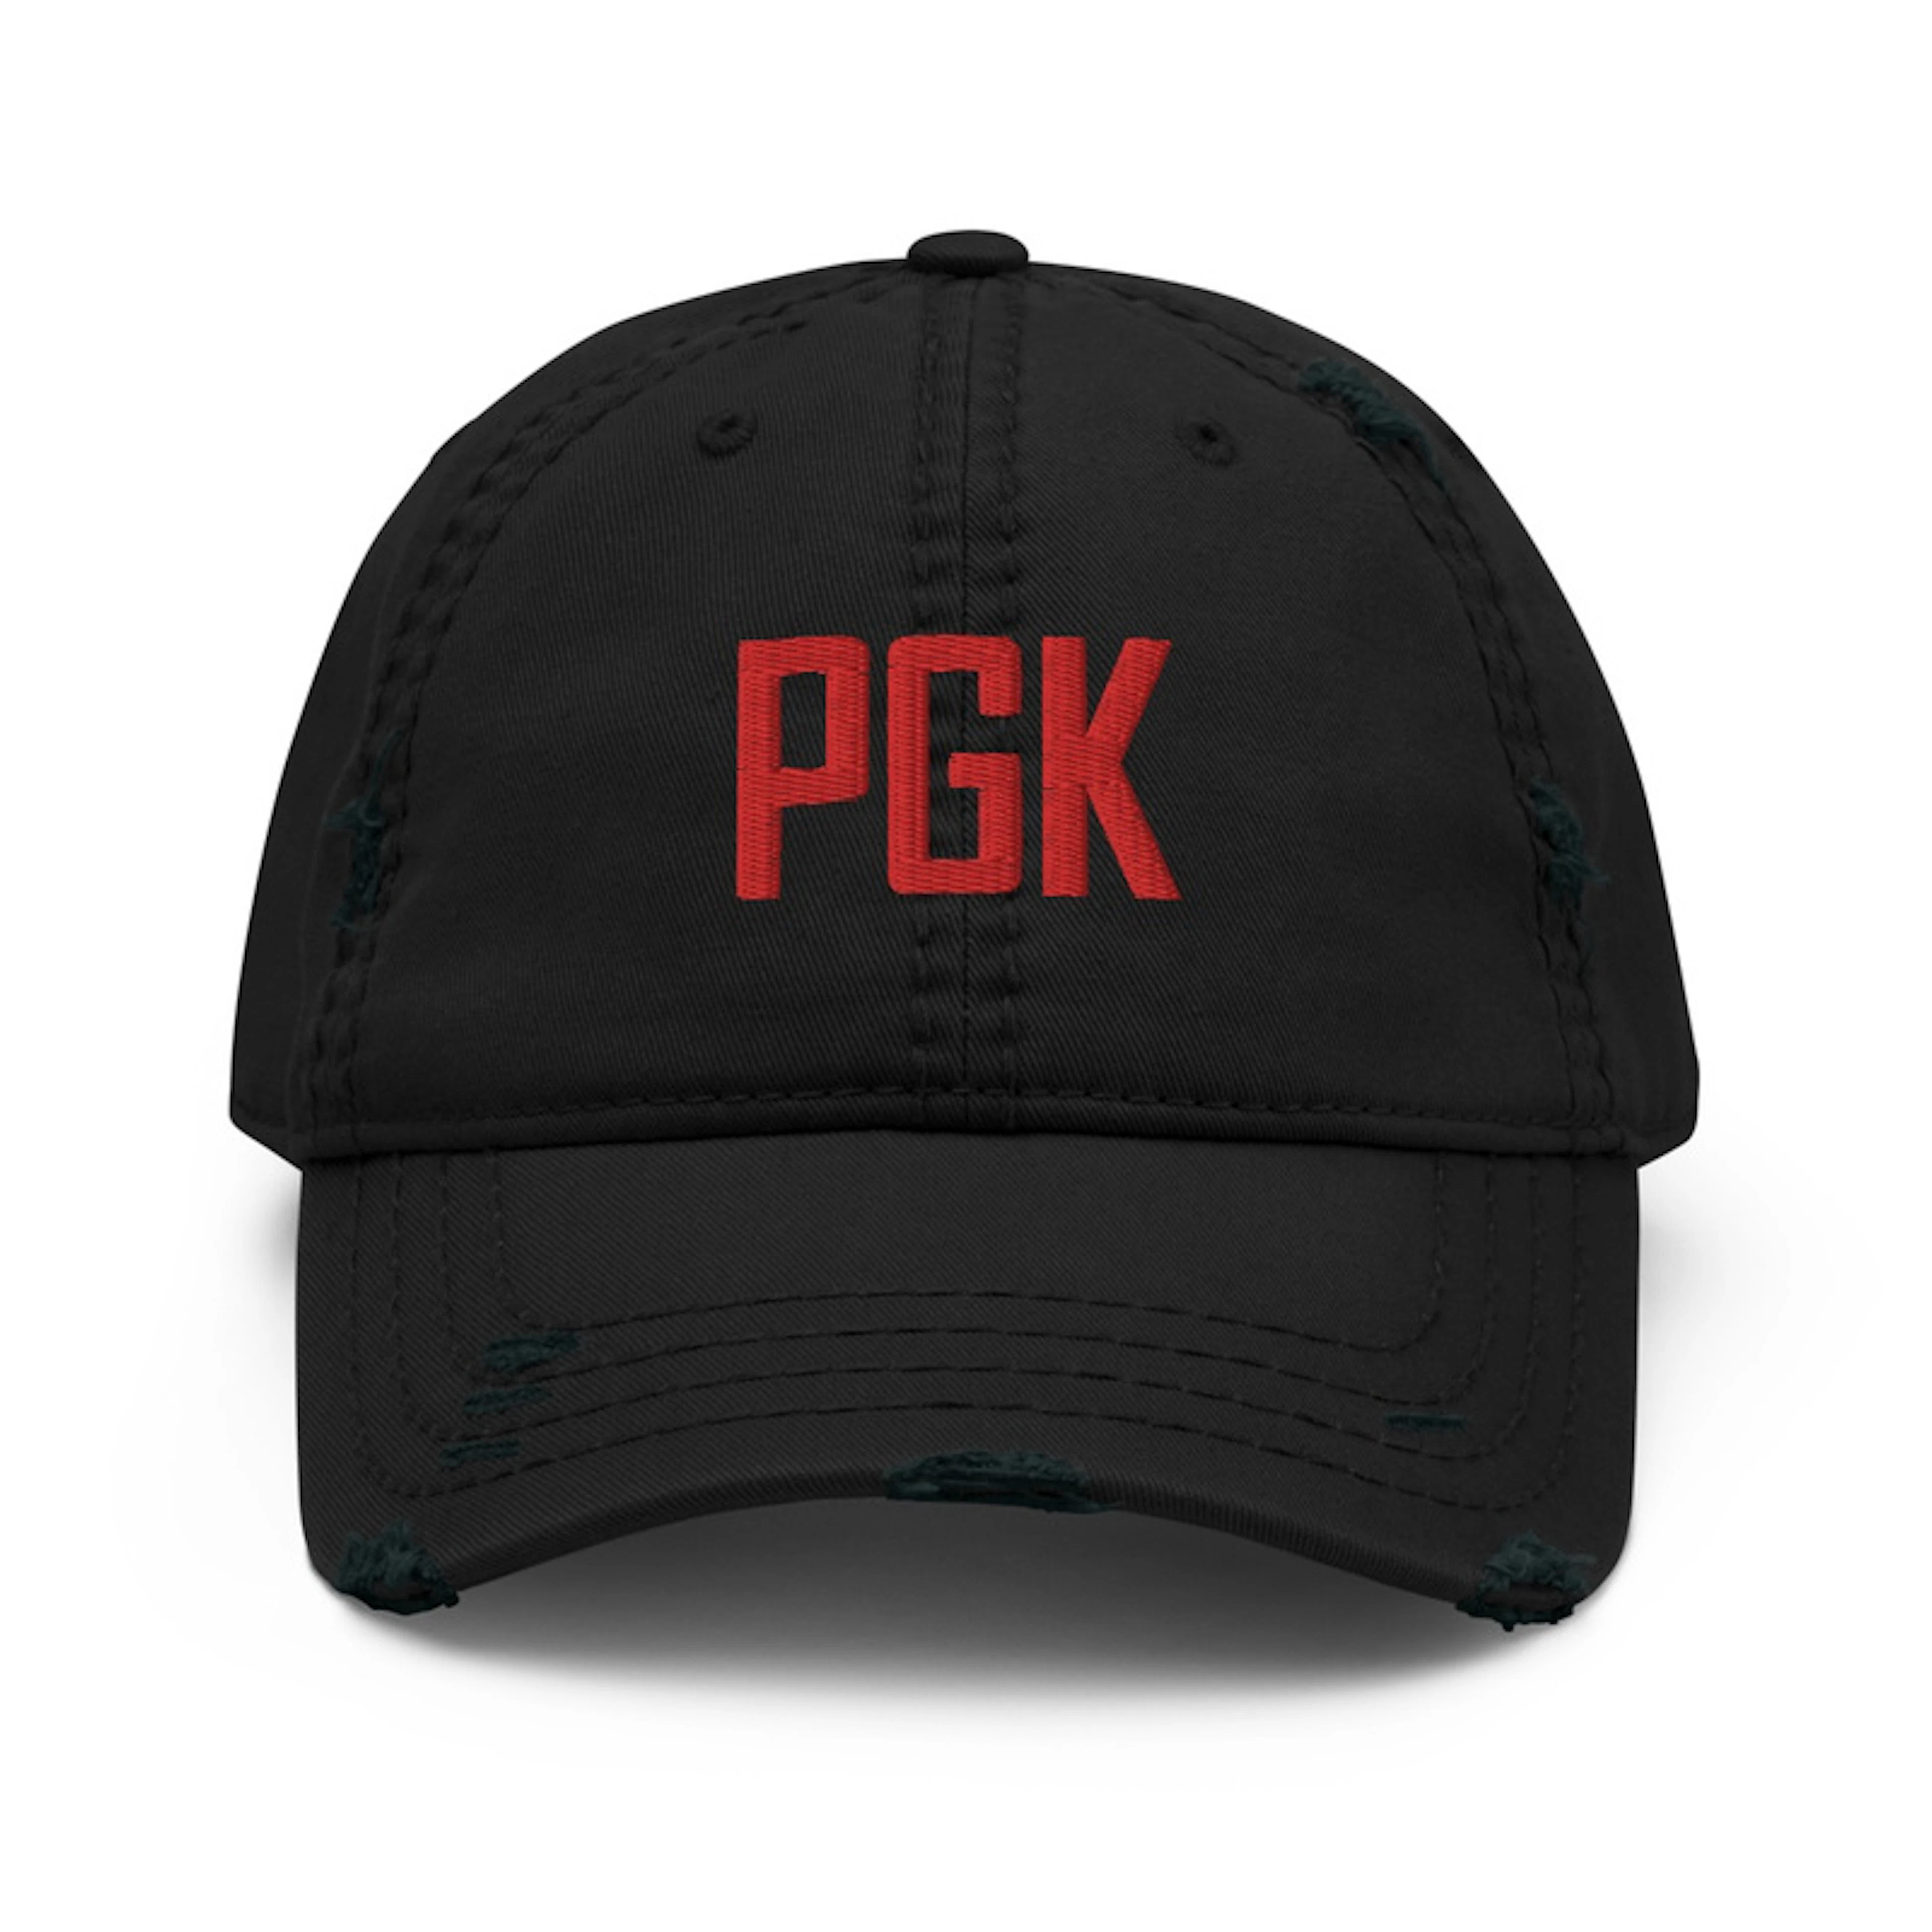 PGK Distressed Cap